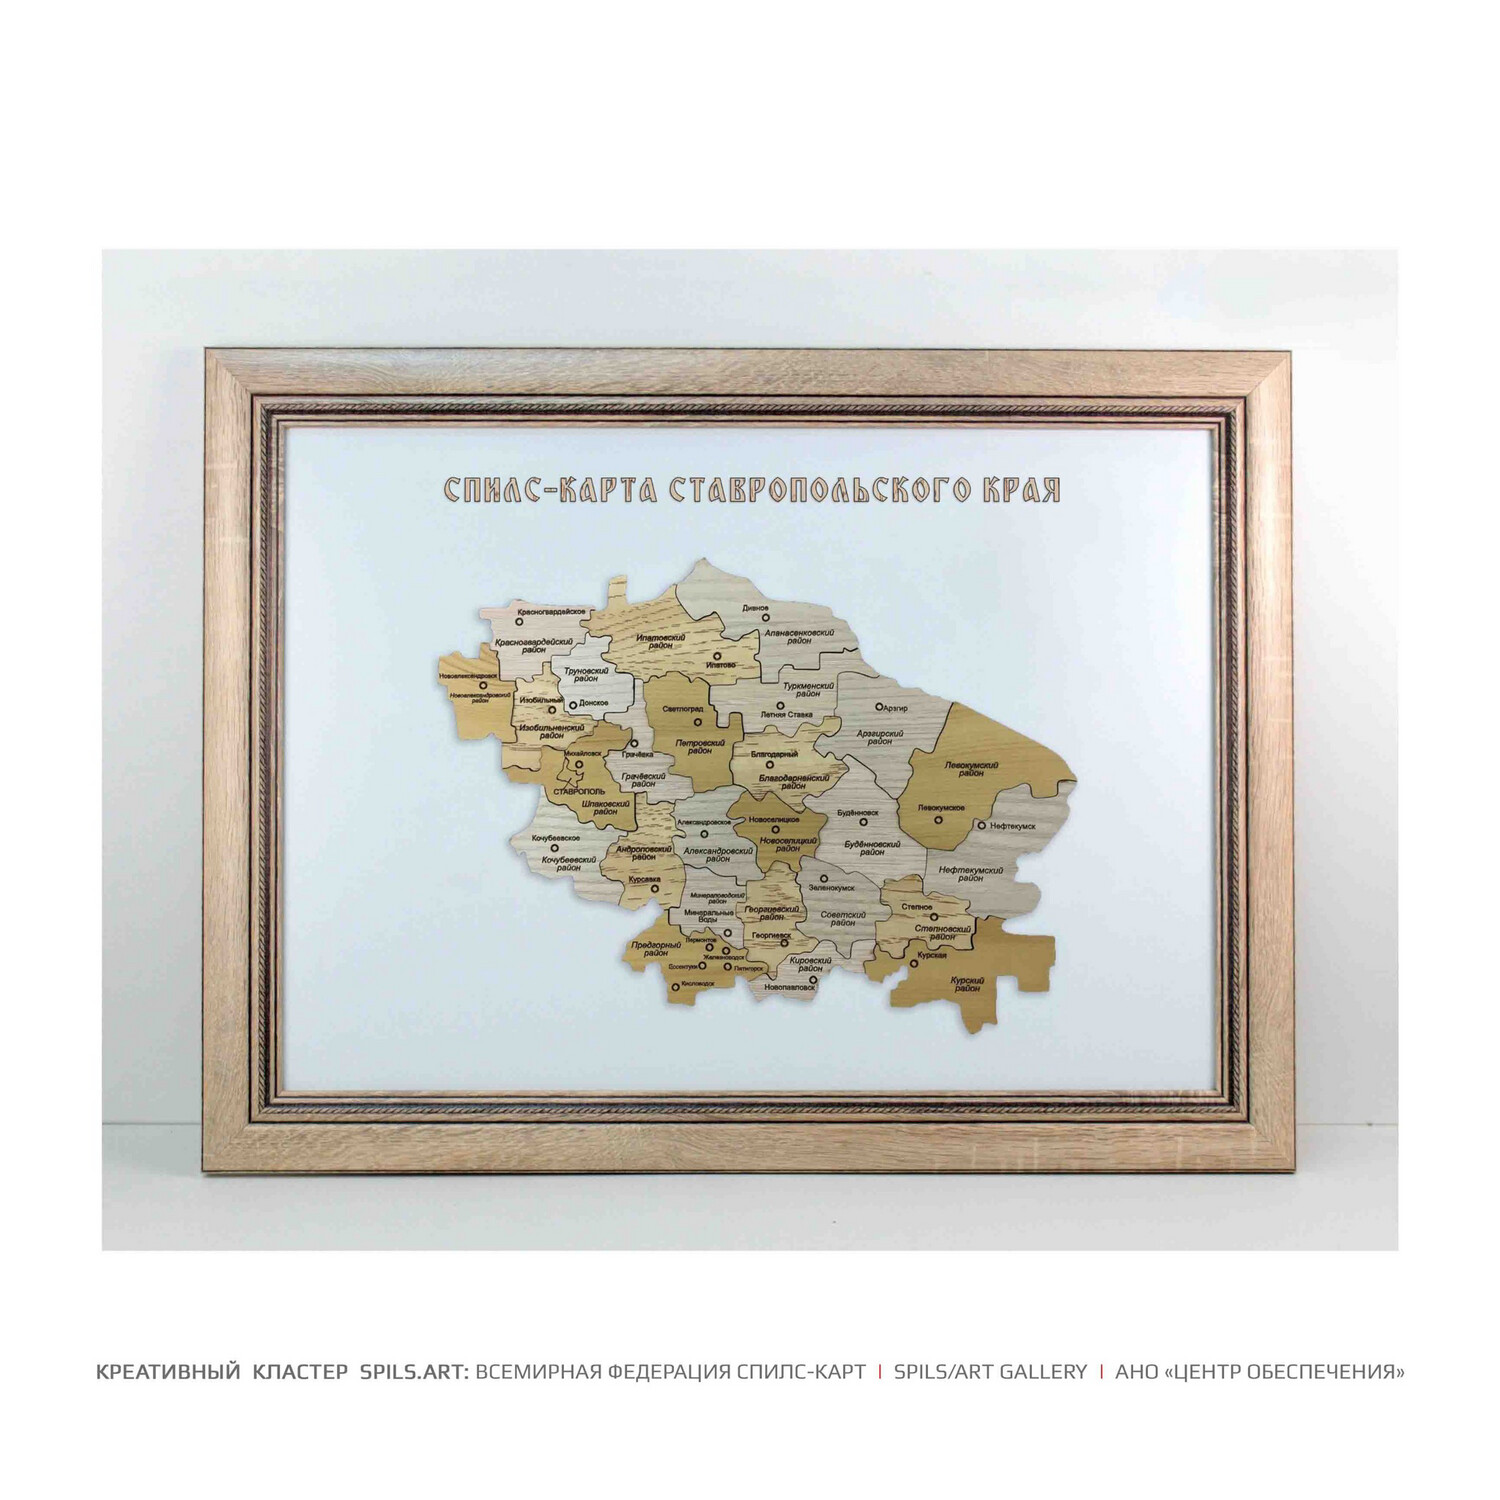 Спилс-карта Ставропольского края - 